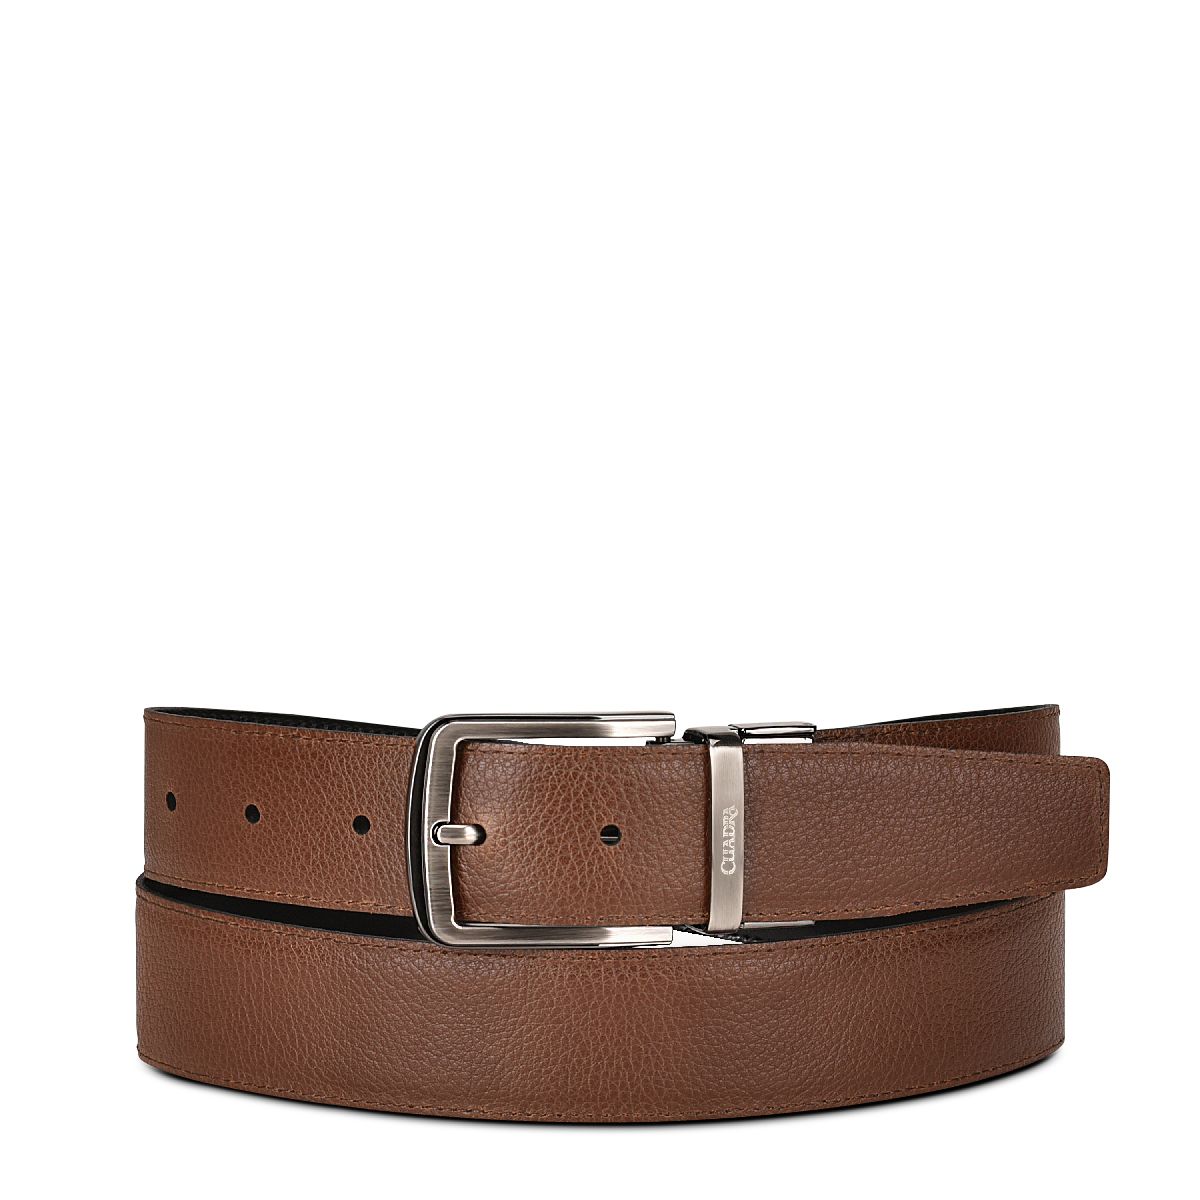 Formal reversible leather belt 2